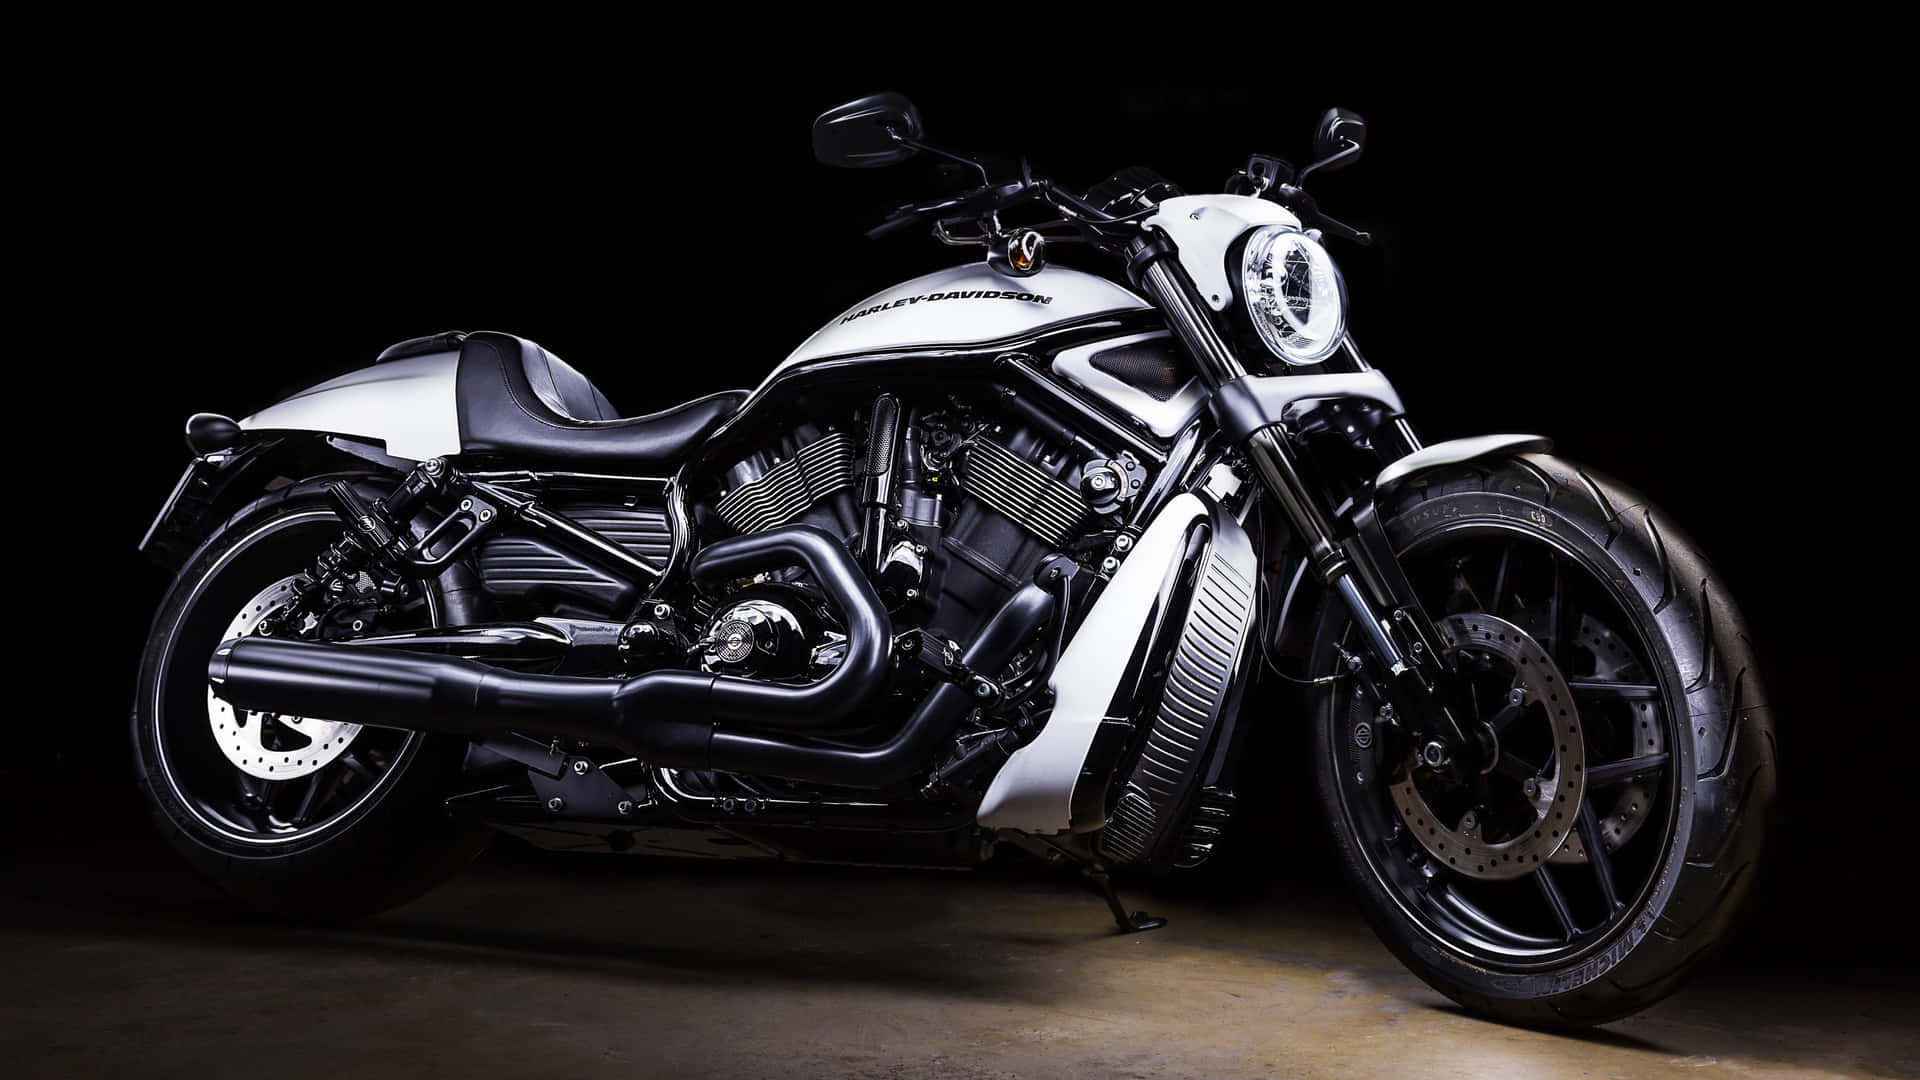 Harley Davidson Silver Metallic Motorcycle Background